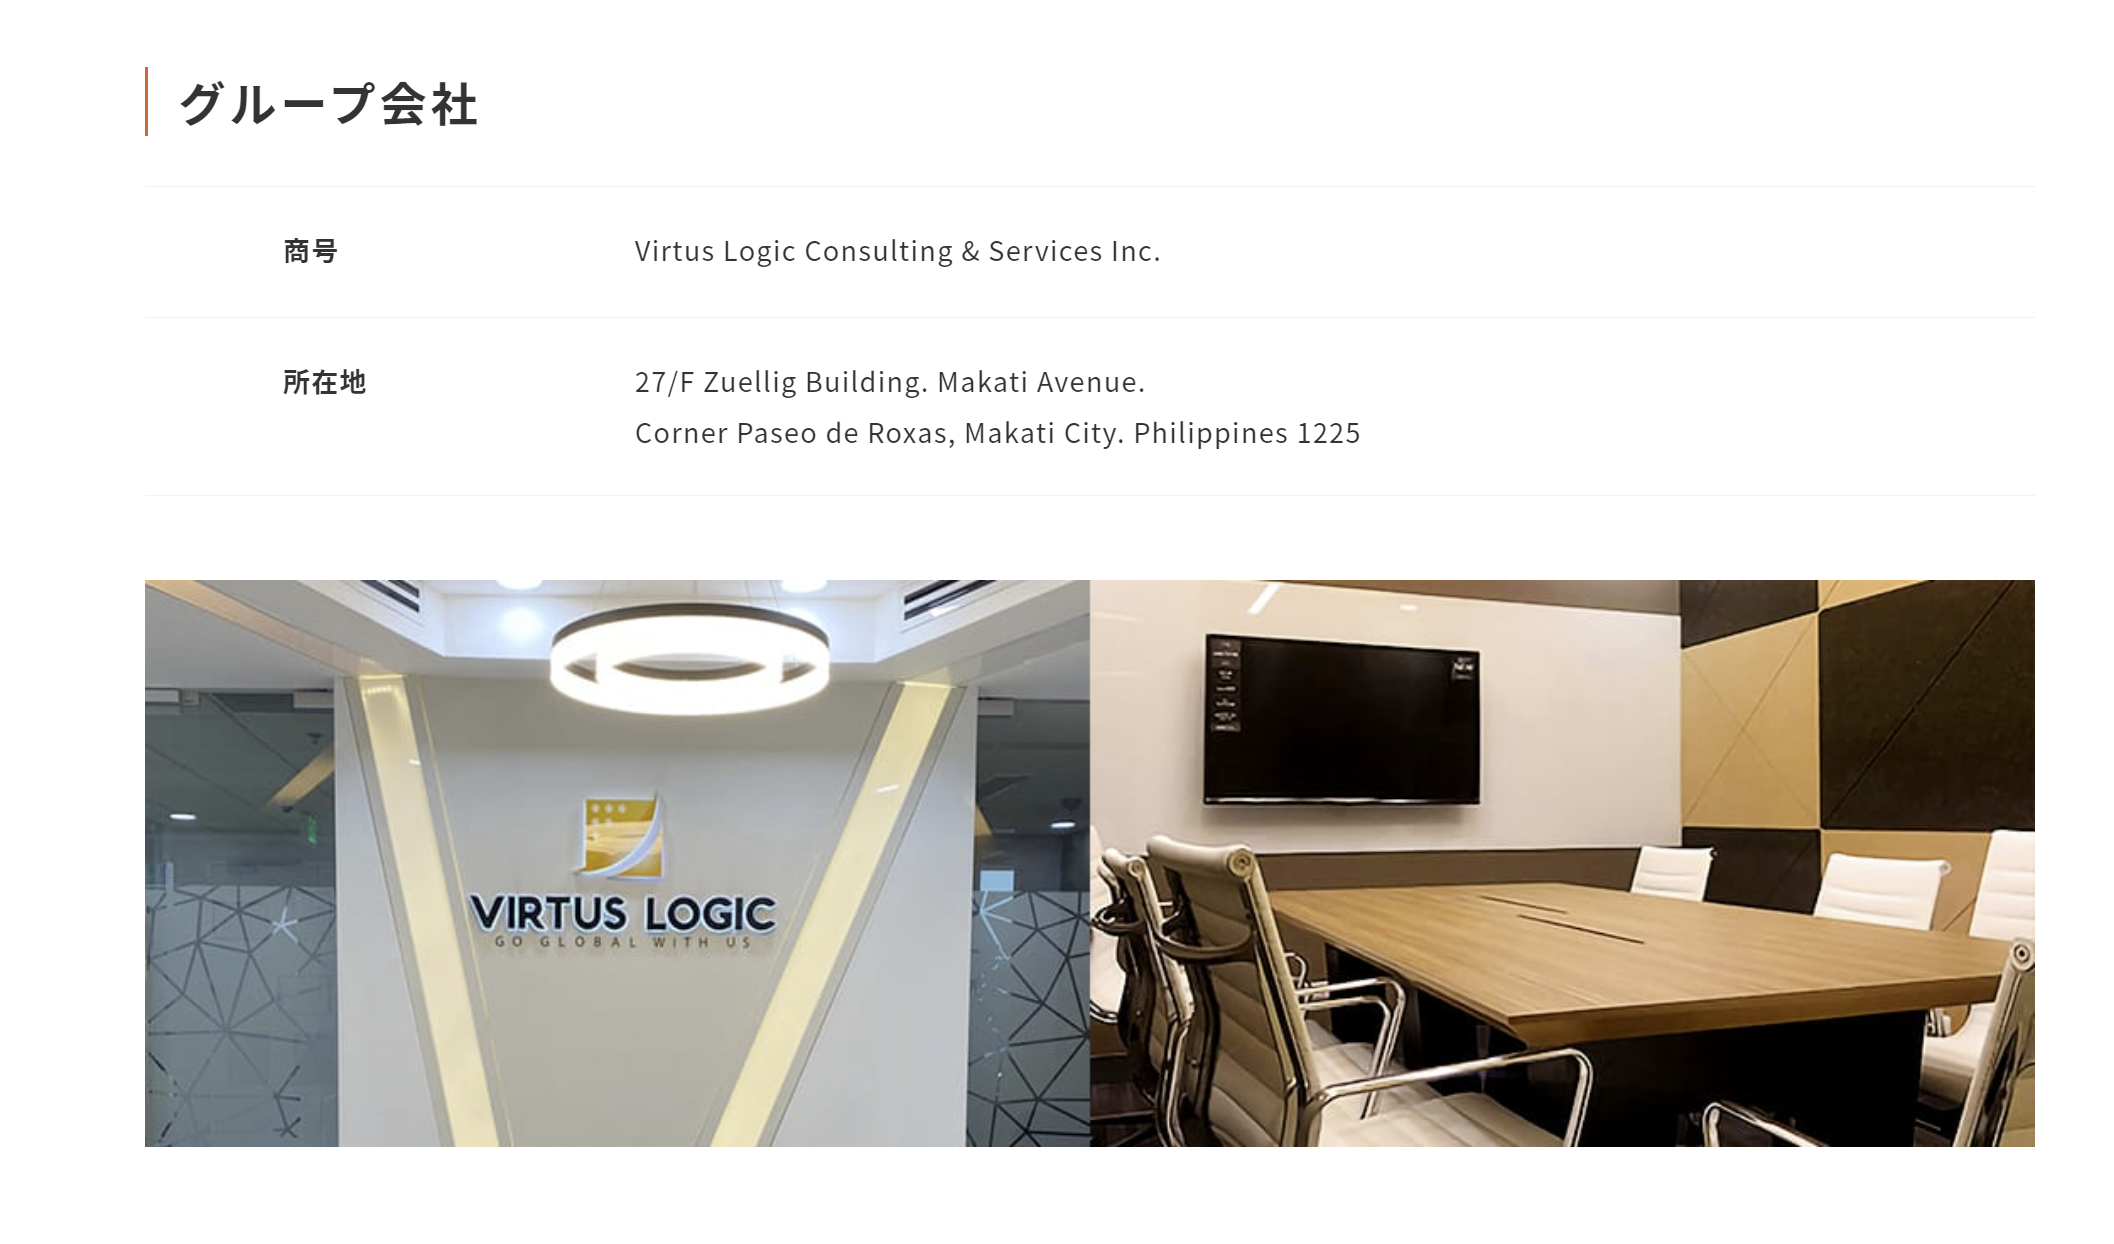 株式会社VIRTUS PAYMENTのホームページをアーカイブサイト「Wayback Machine」で確認すると、グループ会社として「Virtus Logic Consulting and Services Inc」が掲載されています。